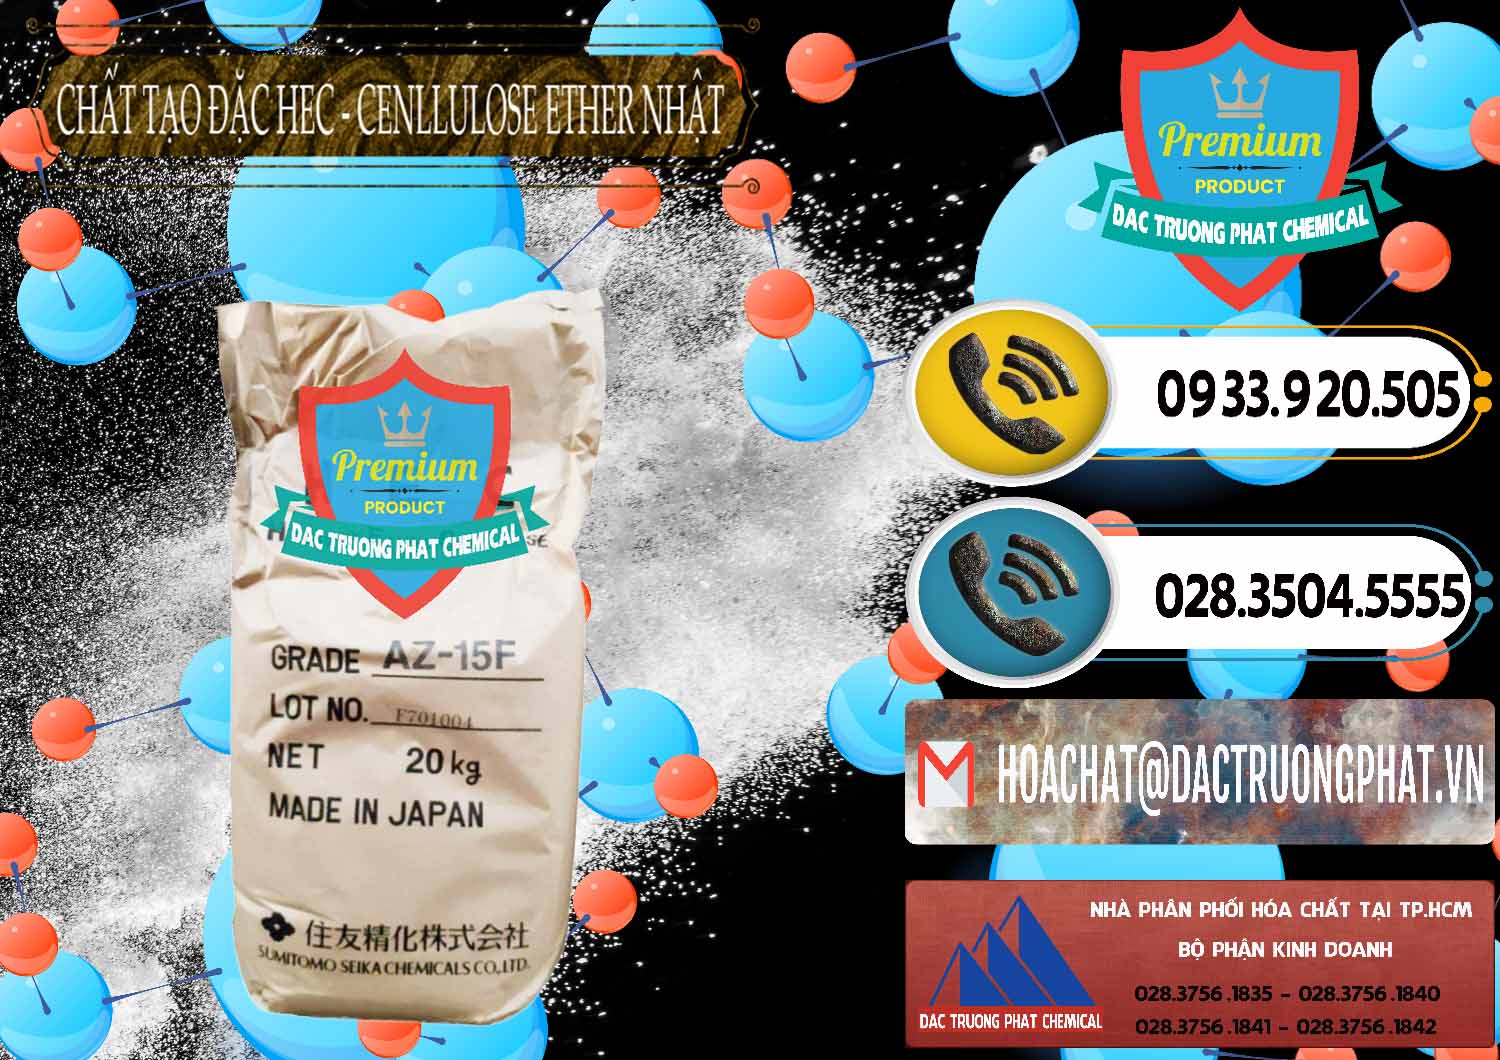 Chuyên bán & cung ứng Chất Tạo Đặc Hec Mecellose – Cenllulose Ether Nhật Bản Japan - 0367 - Đơn vị bán _ phân phối hóa chất tại TP.HCM - hoachatdetnhuom.vn